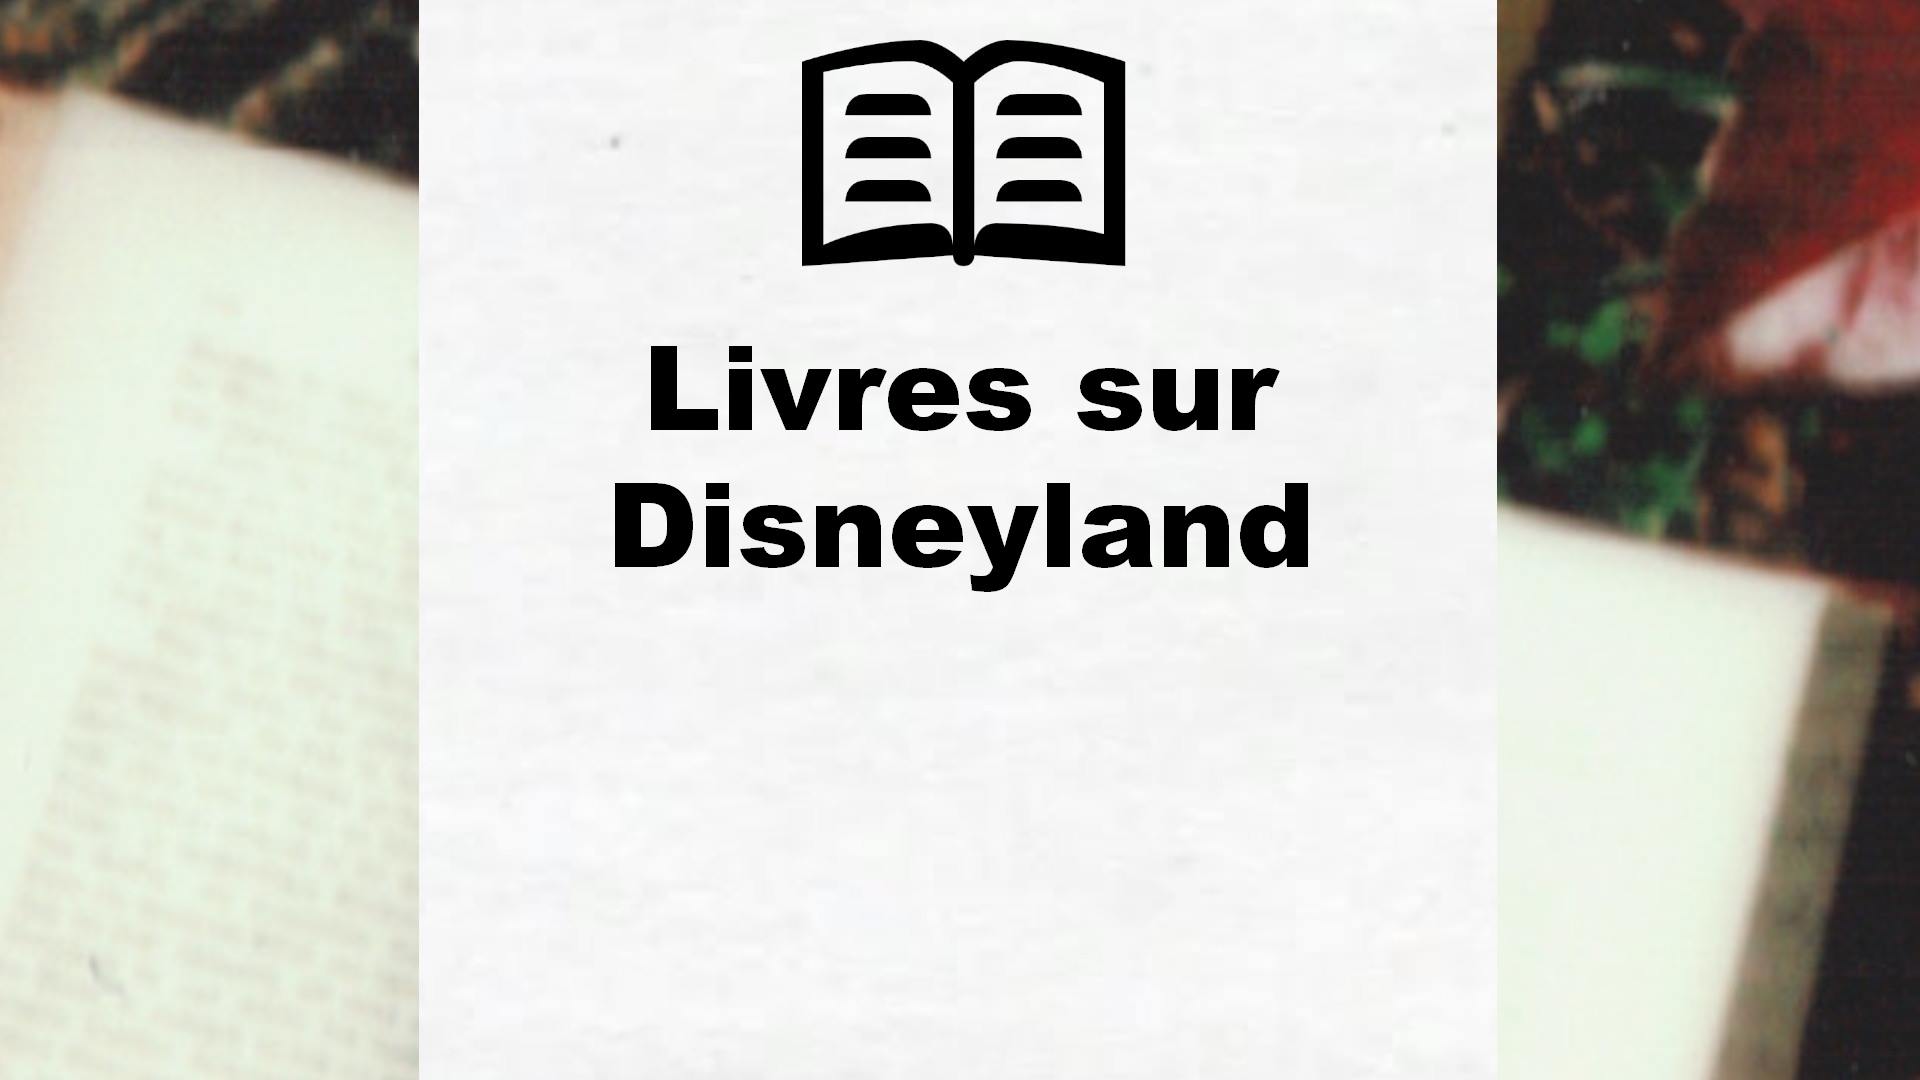 Livres sur Disneyland